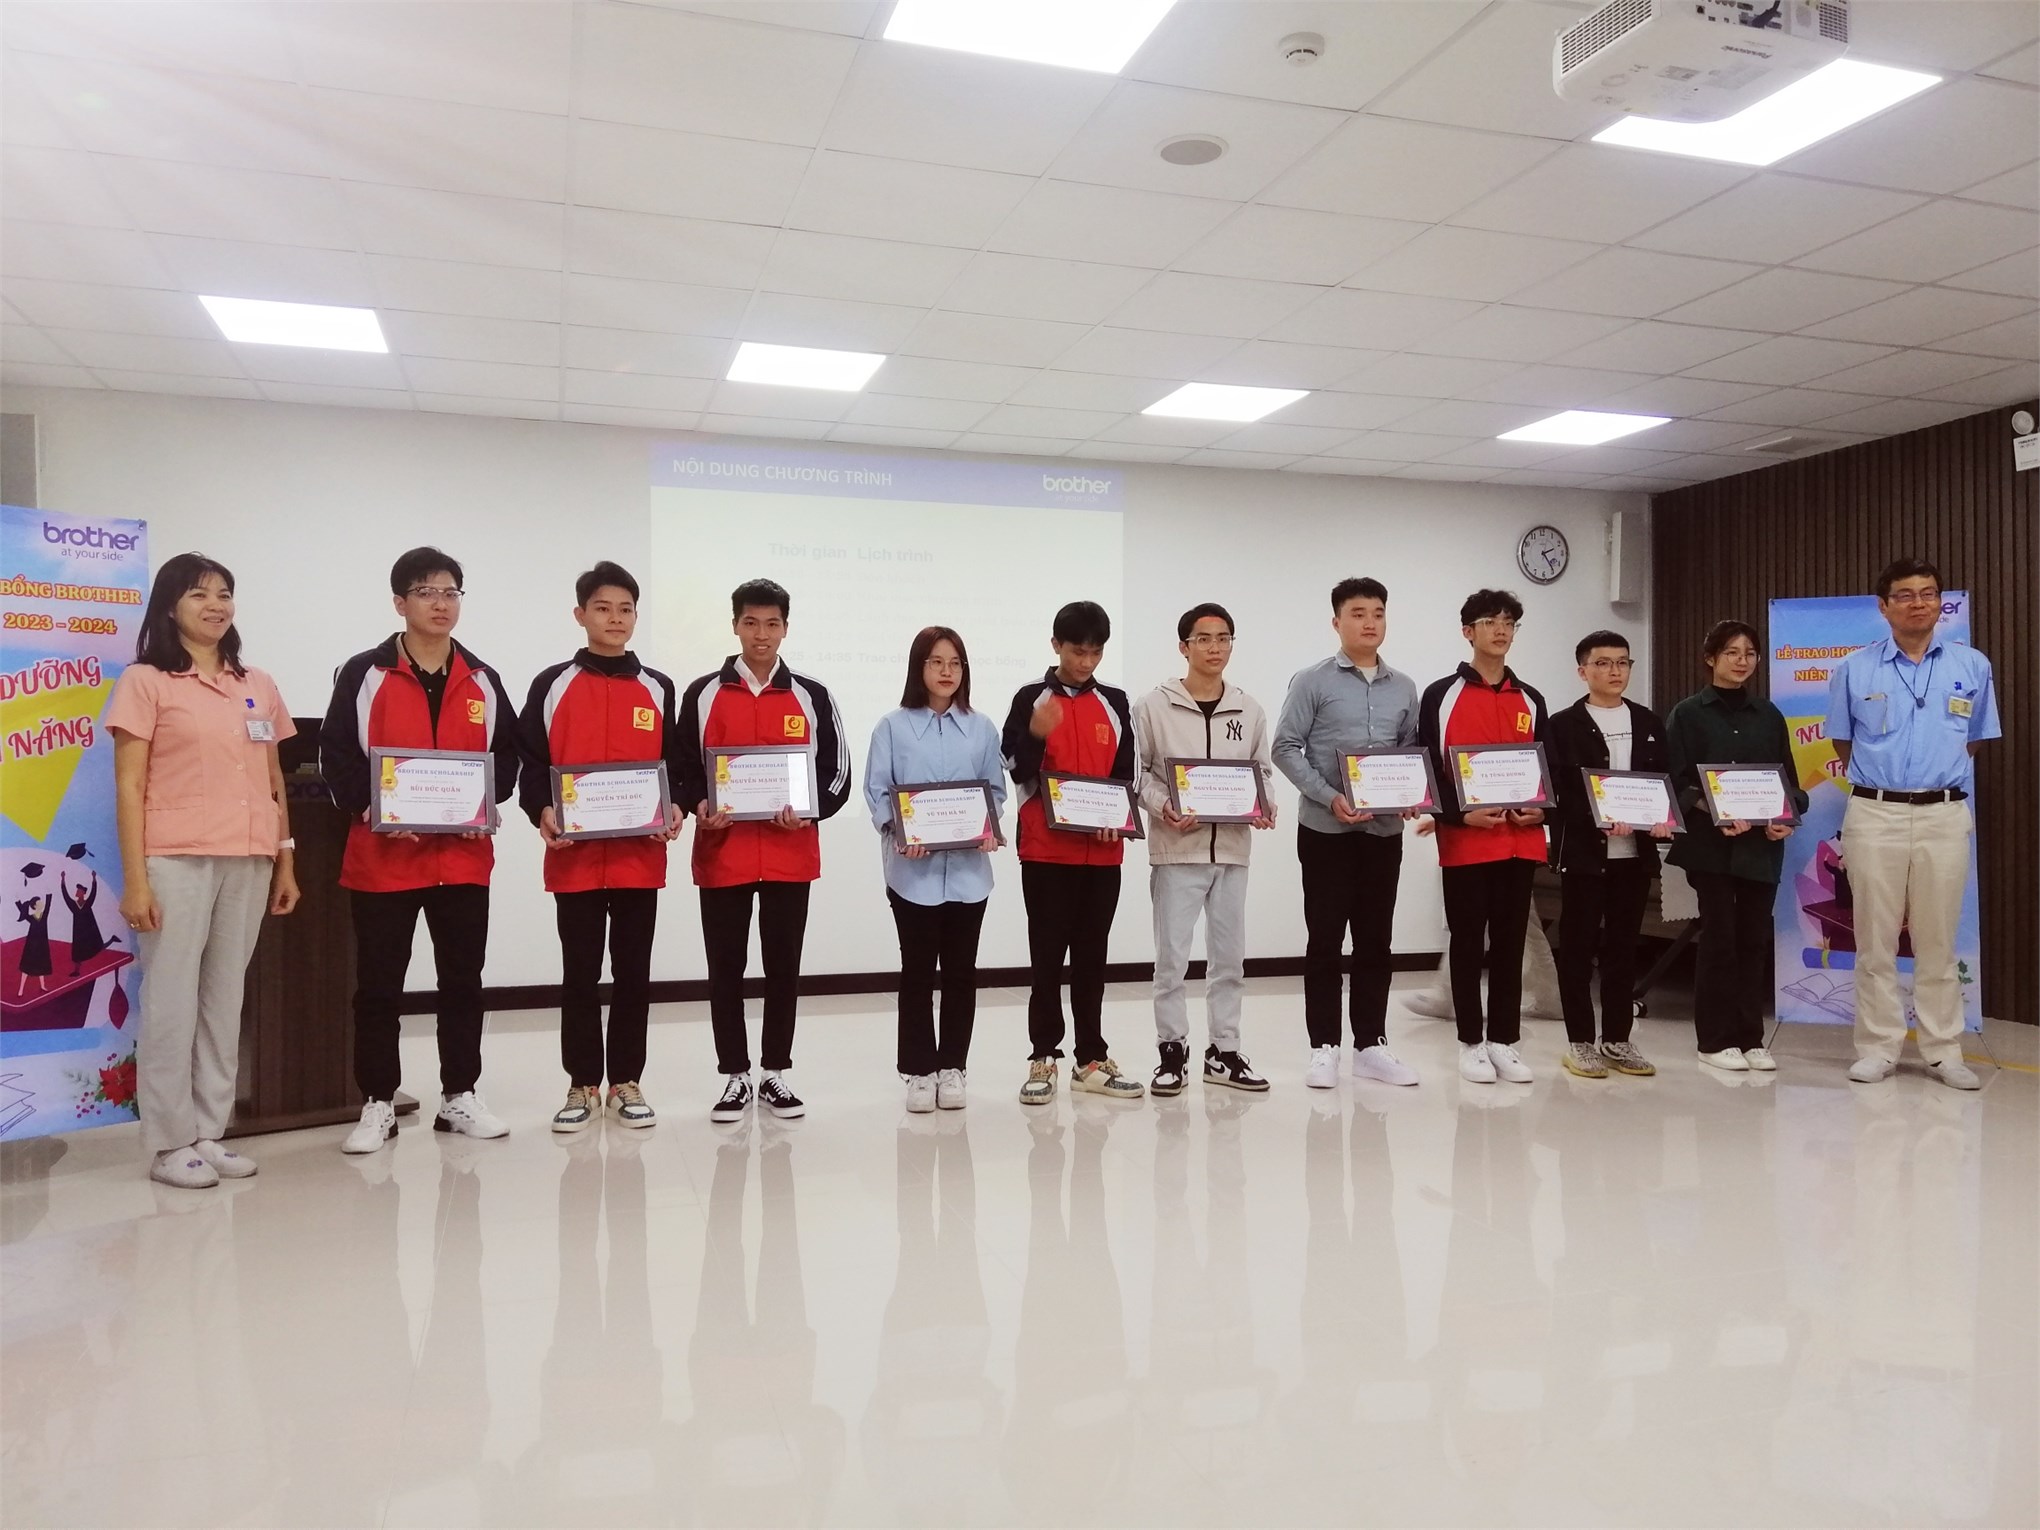 10 sinh viên xuất sắc nhận học bổng do Công ty TNHH Công nghiệp Brother tài trợ